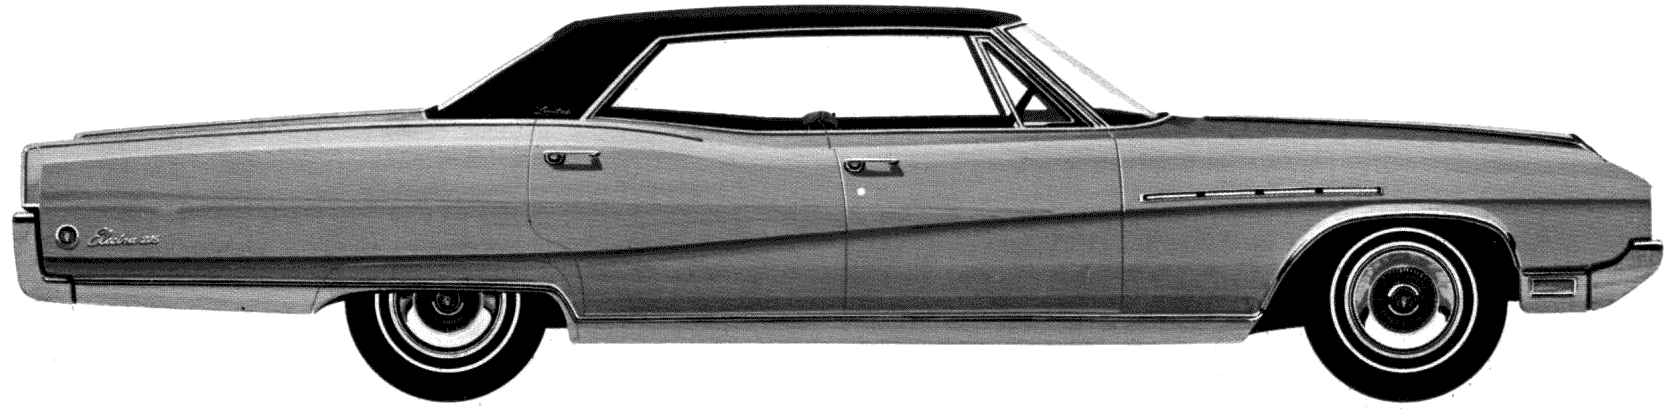 Cotxe Buick Electra 225 Limited 4-Door Hardtop 1968 